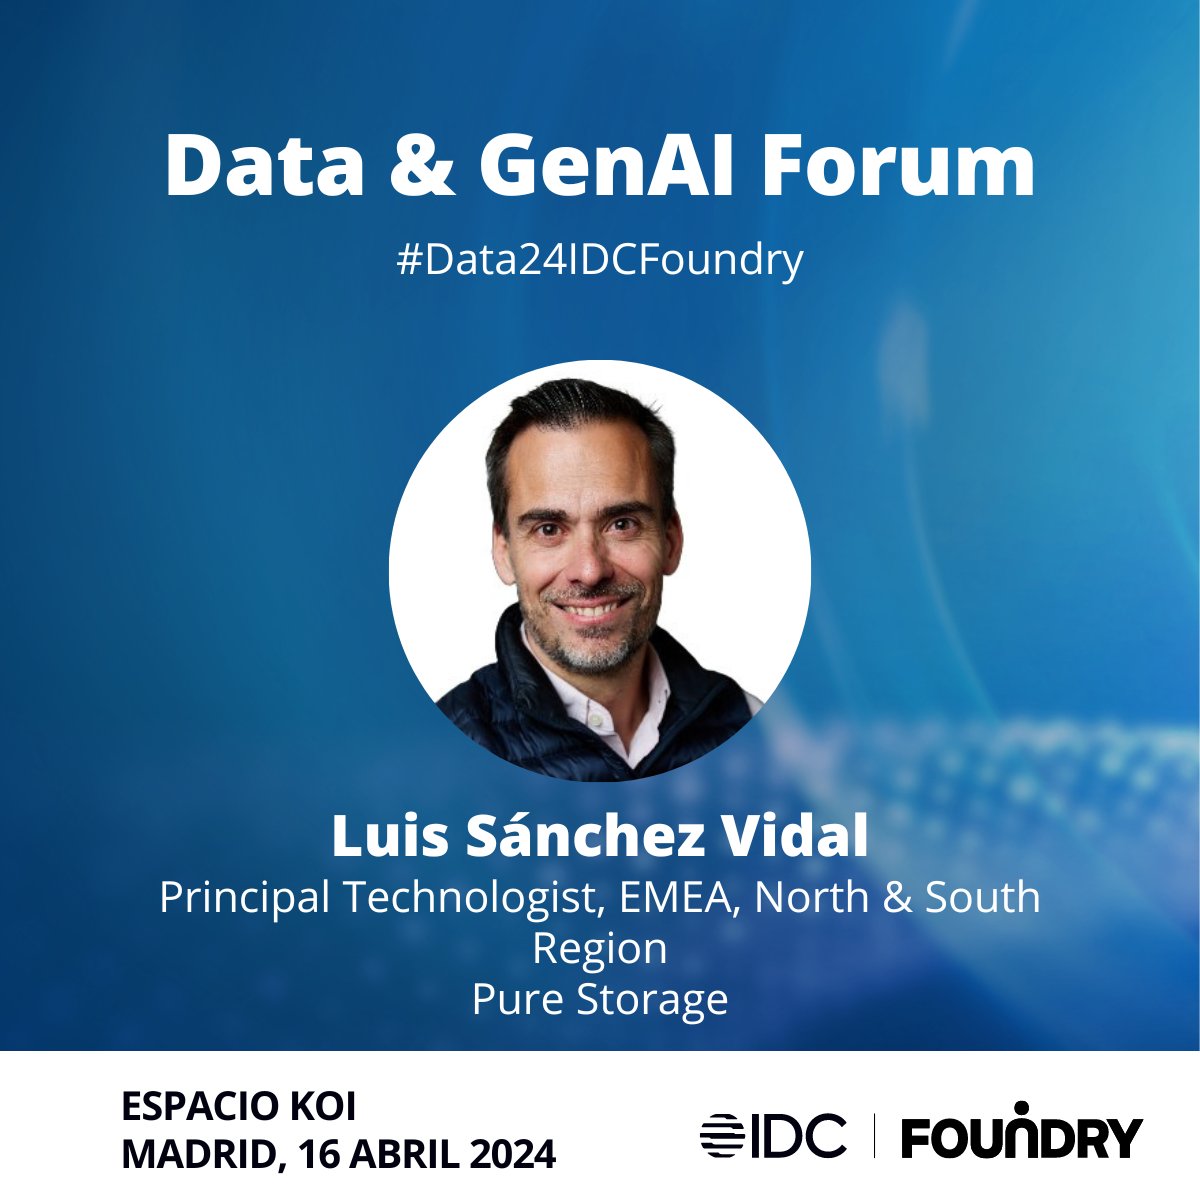 Es turno en el escenario para la ponencia de Luis Sánchez, Principal Technologist, EMEA, en @purestoragees. #Data24IDCFoundry @FoundrySpain @IDCSpain #Data #IA #GenAI